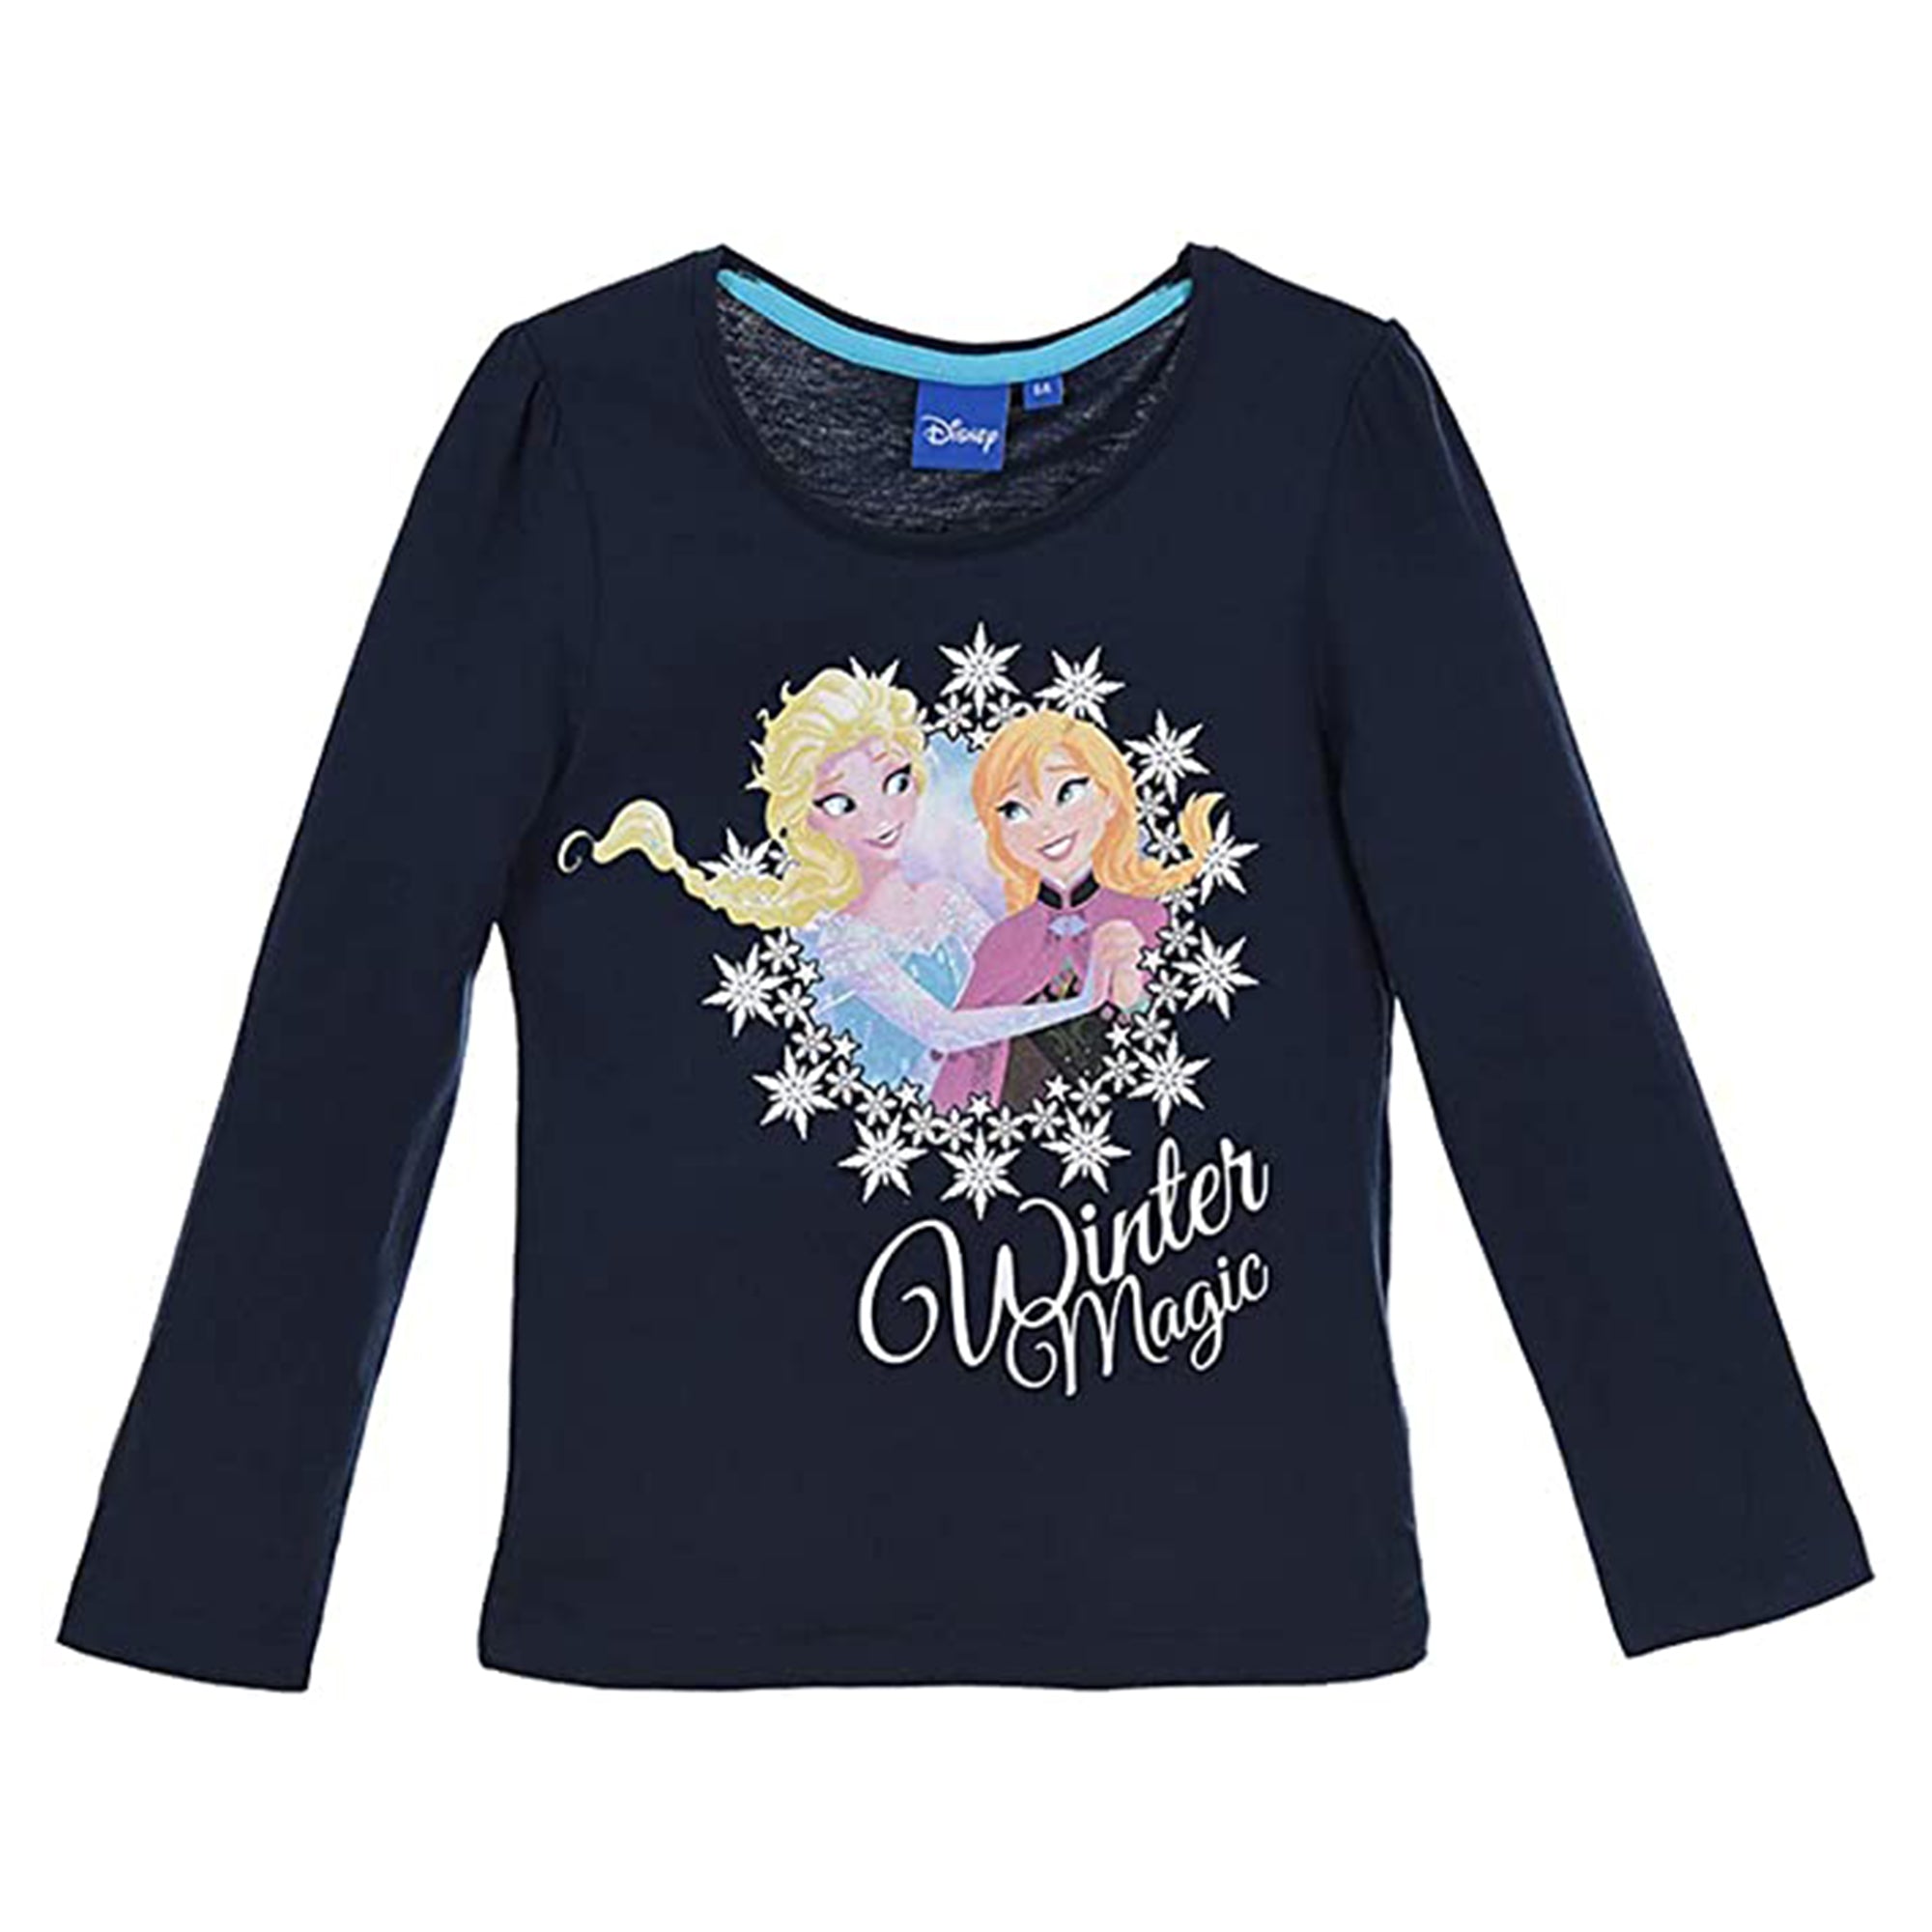 Maglietta maniche lunghe bambina ufficiale Disney Frozen Elsa originale 3298